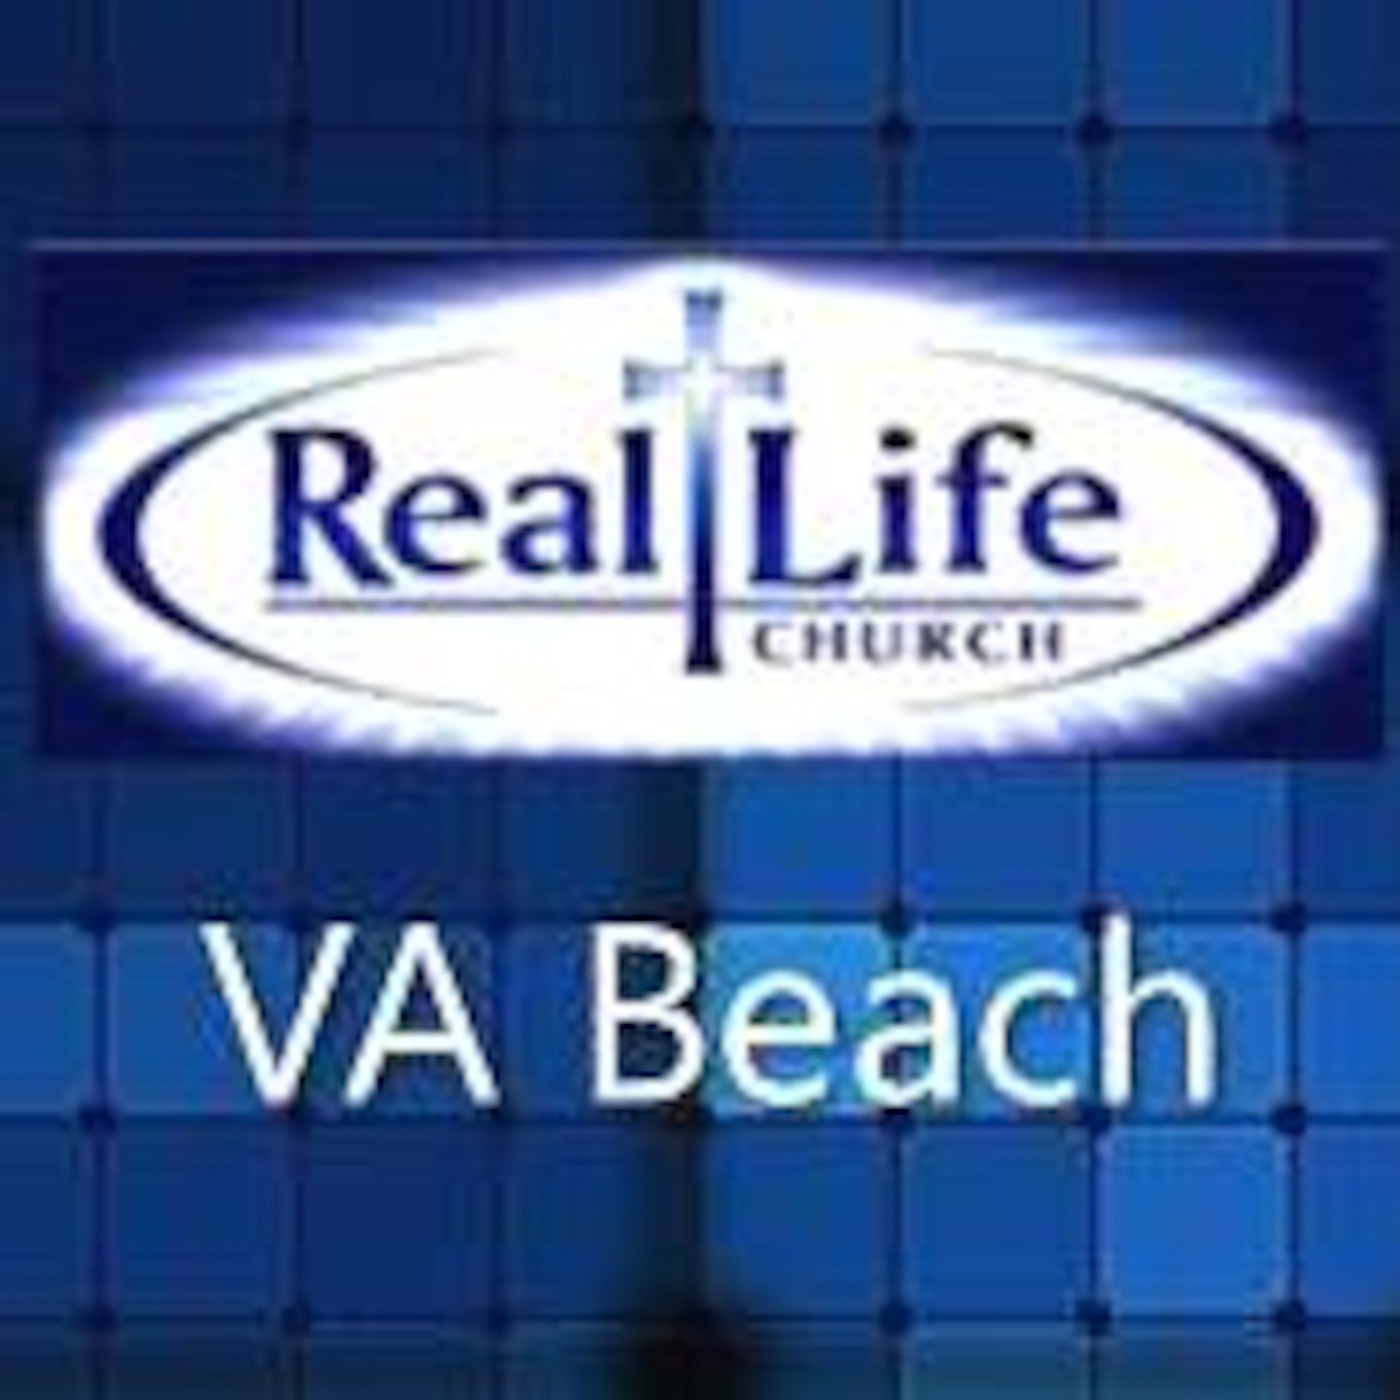 Real Life Church VB